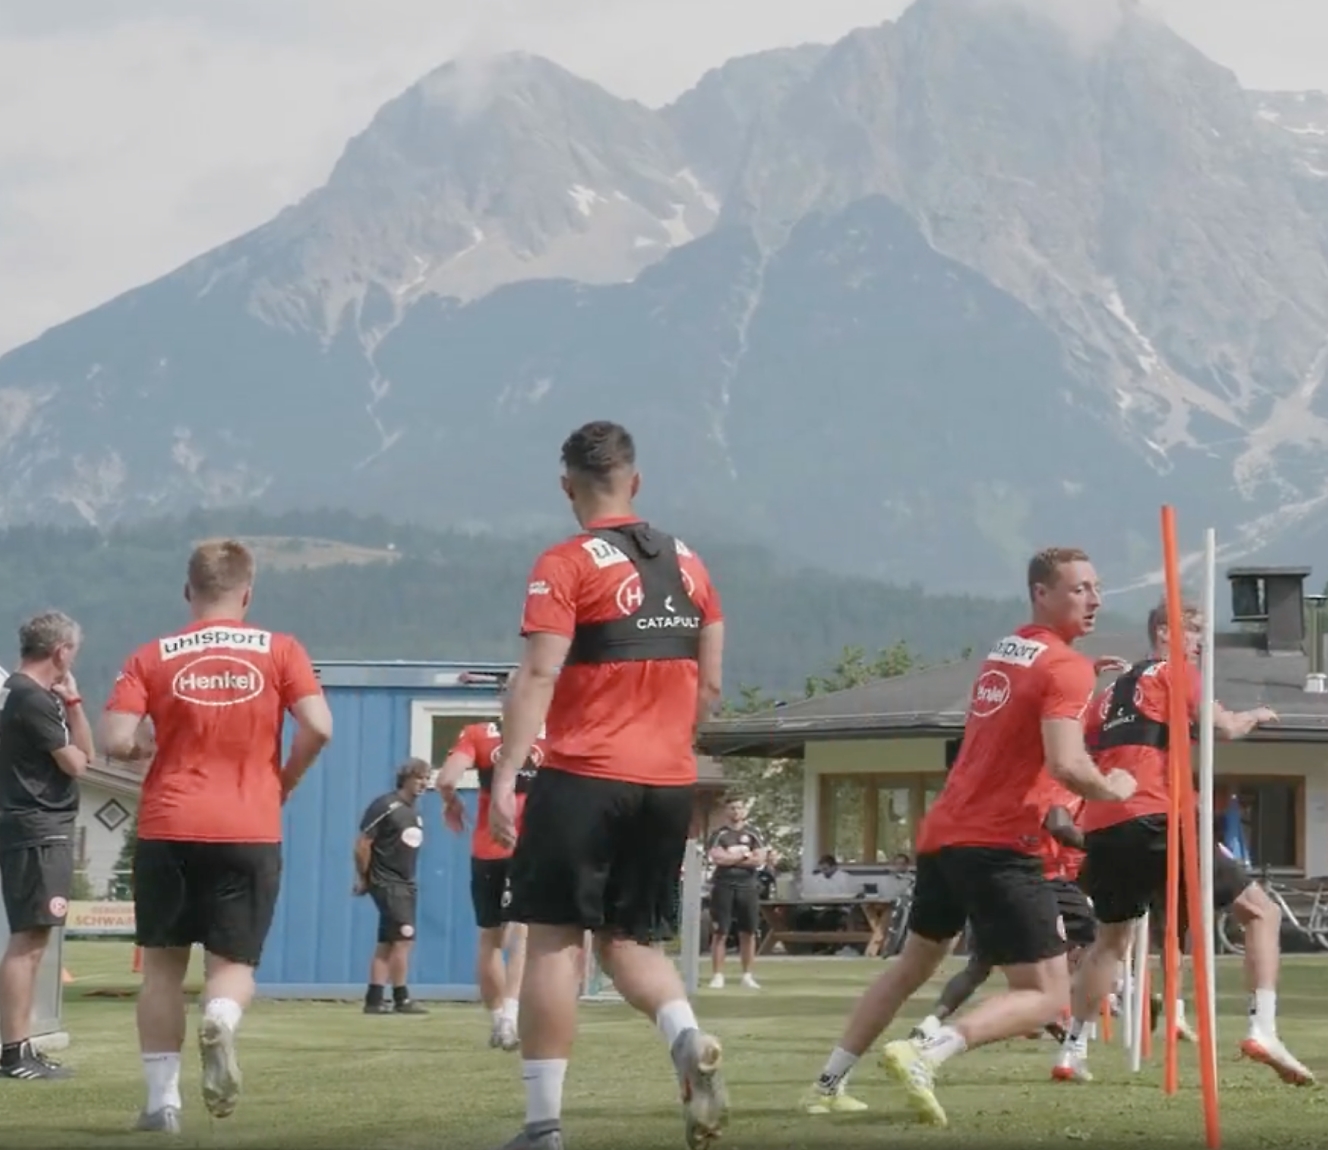 Fotbollsspelare i röda tröjor tränar utomhus med bergsvyer i bakgrunden.